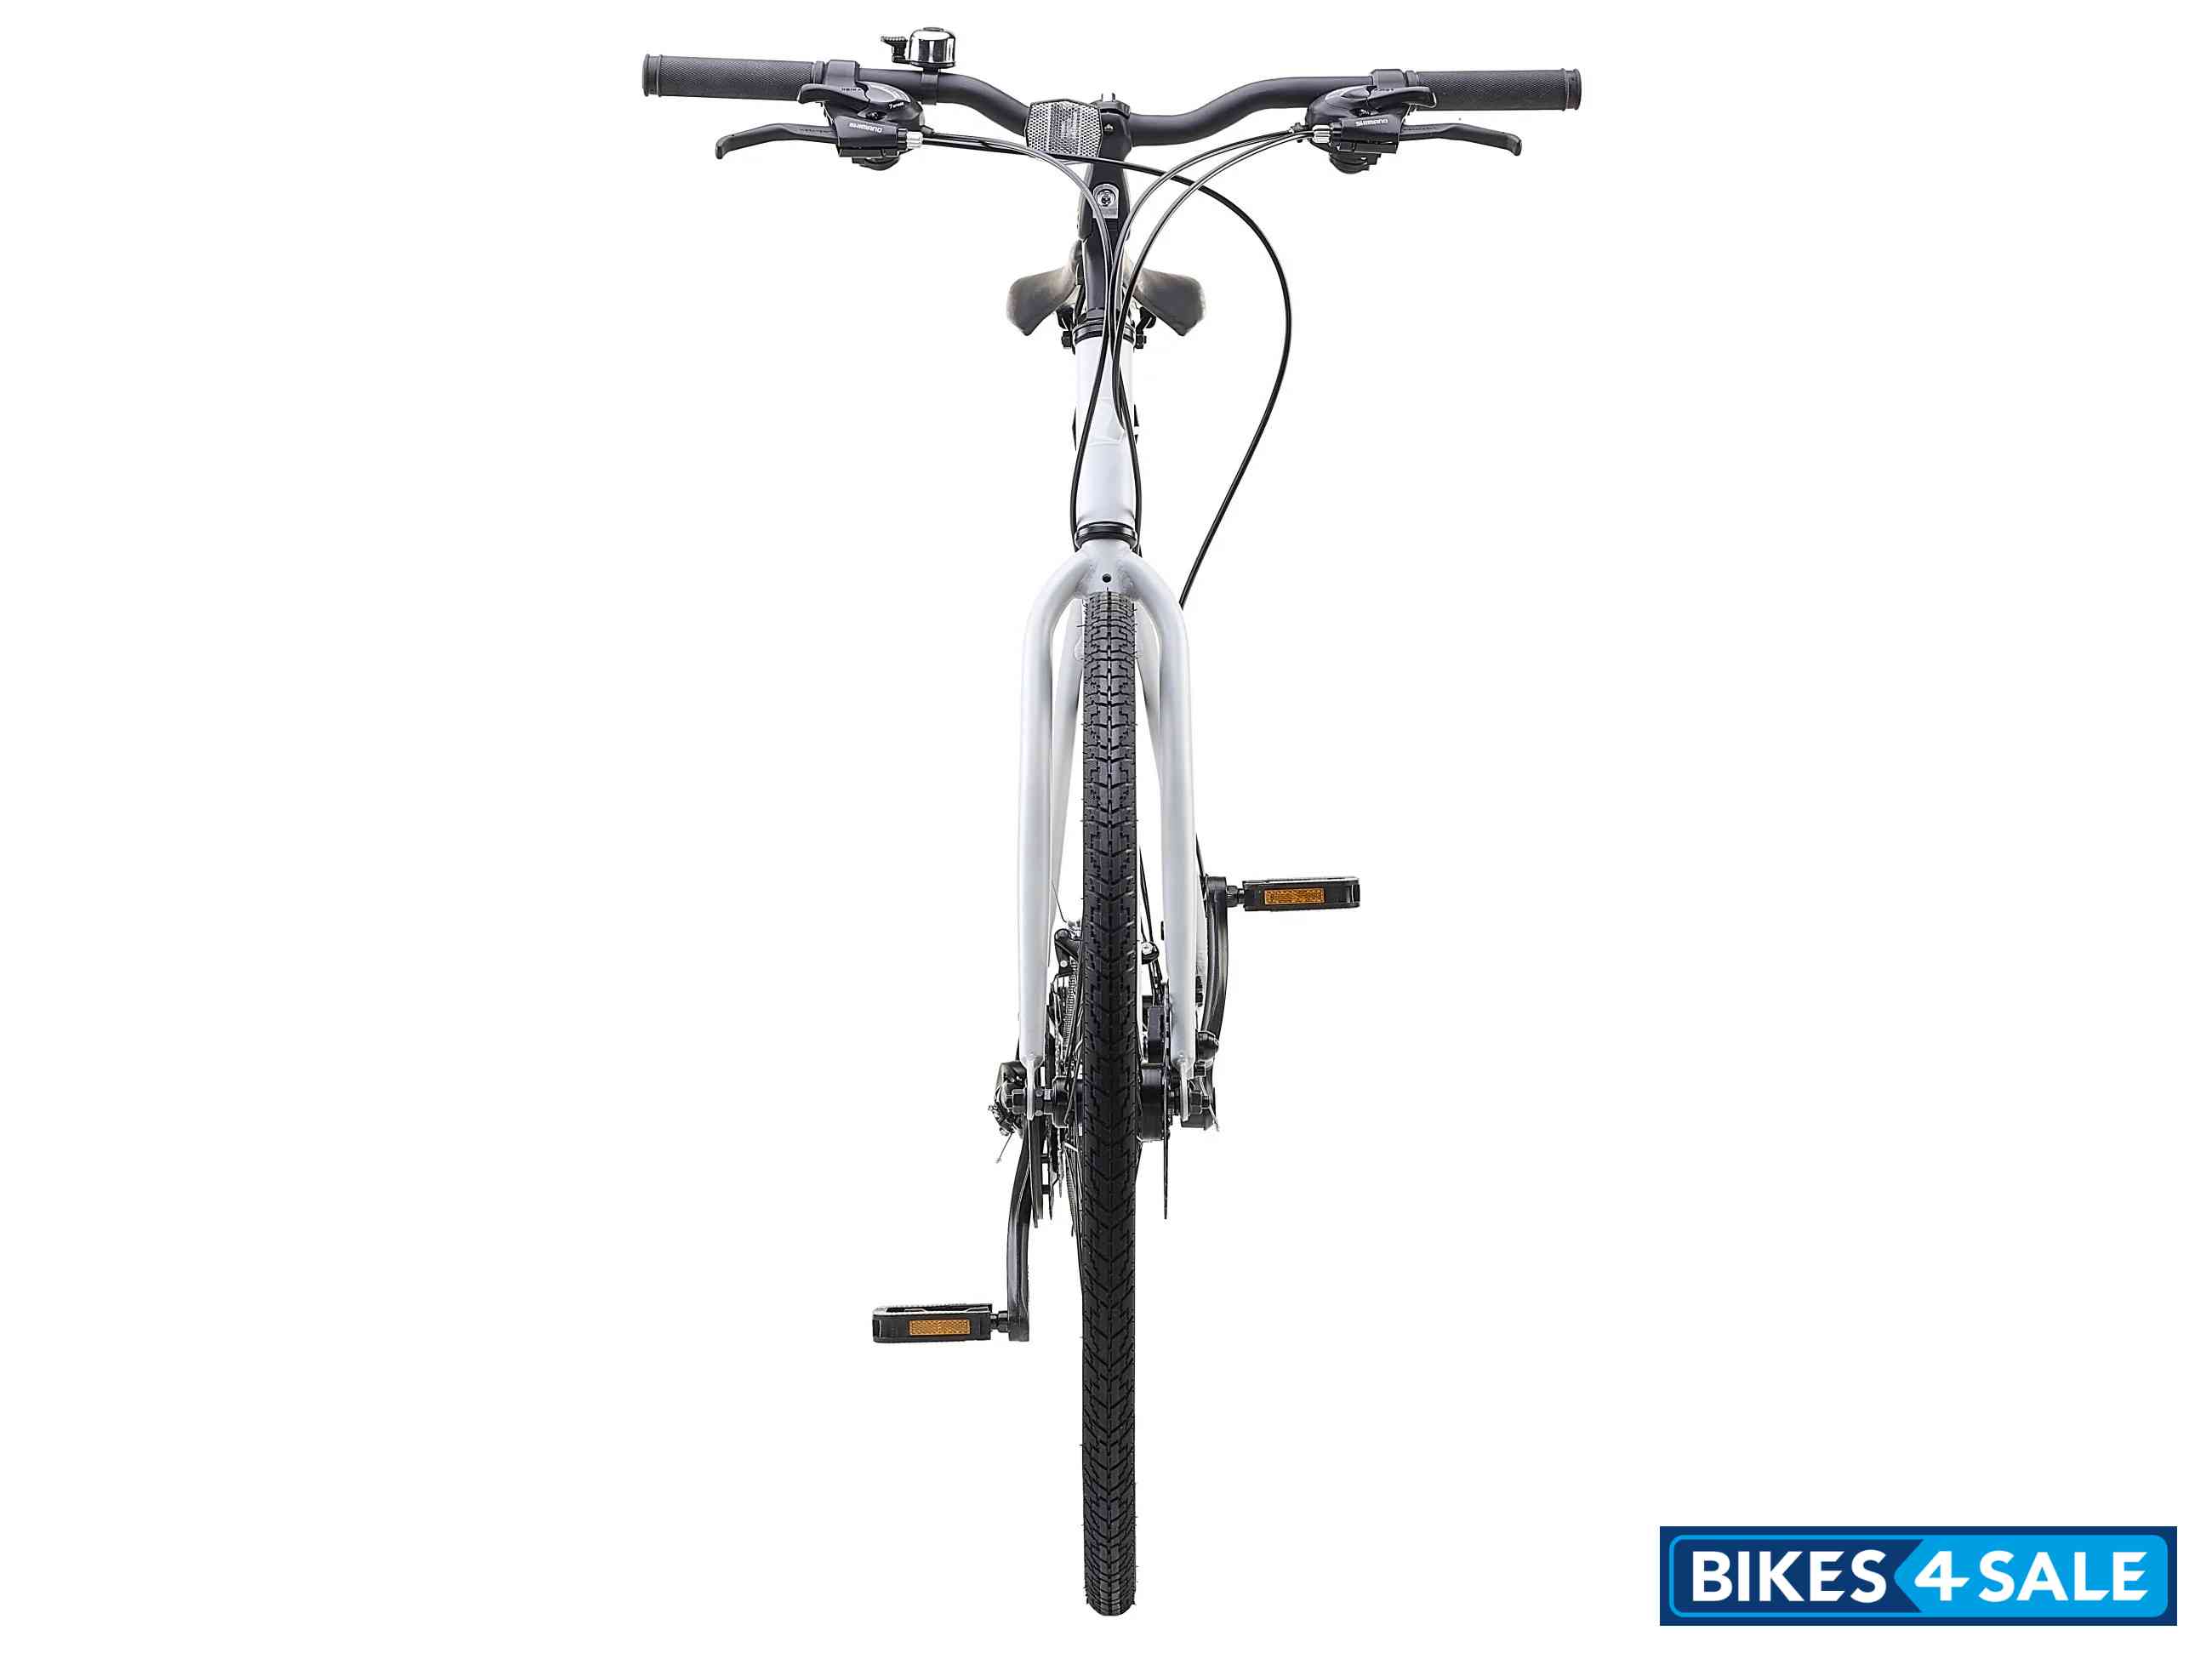 Insync Ara Aluminium Mens Hybrid Bike